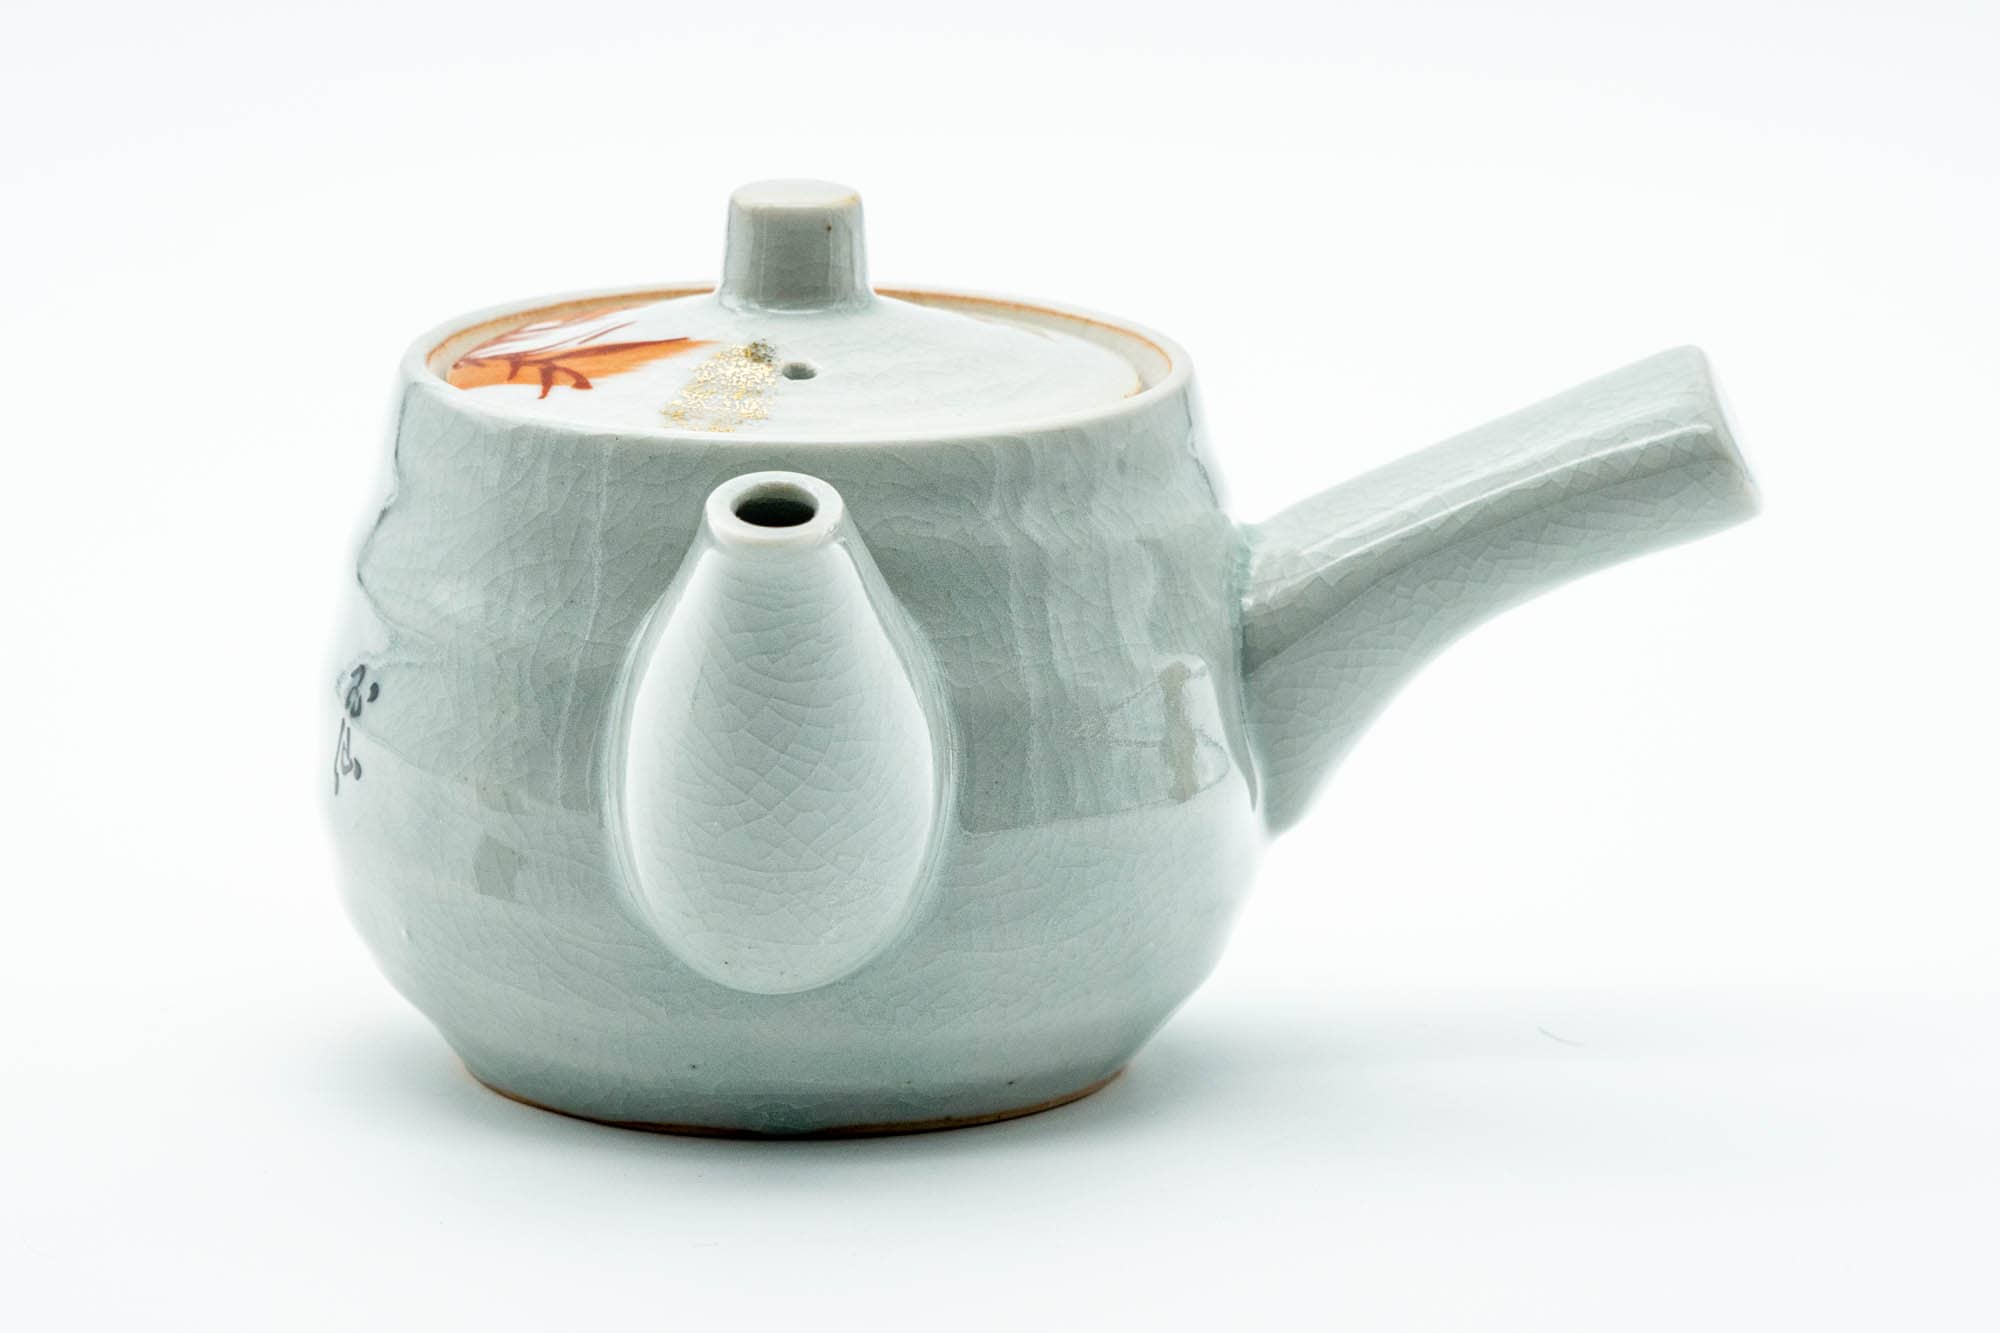 Japanese Kyusu - Red Bamboo Motif Kutani-yaki Porcelain Teapot - 370ml